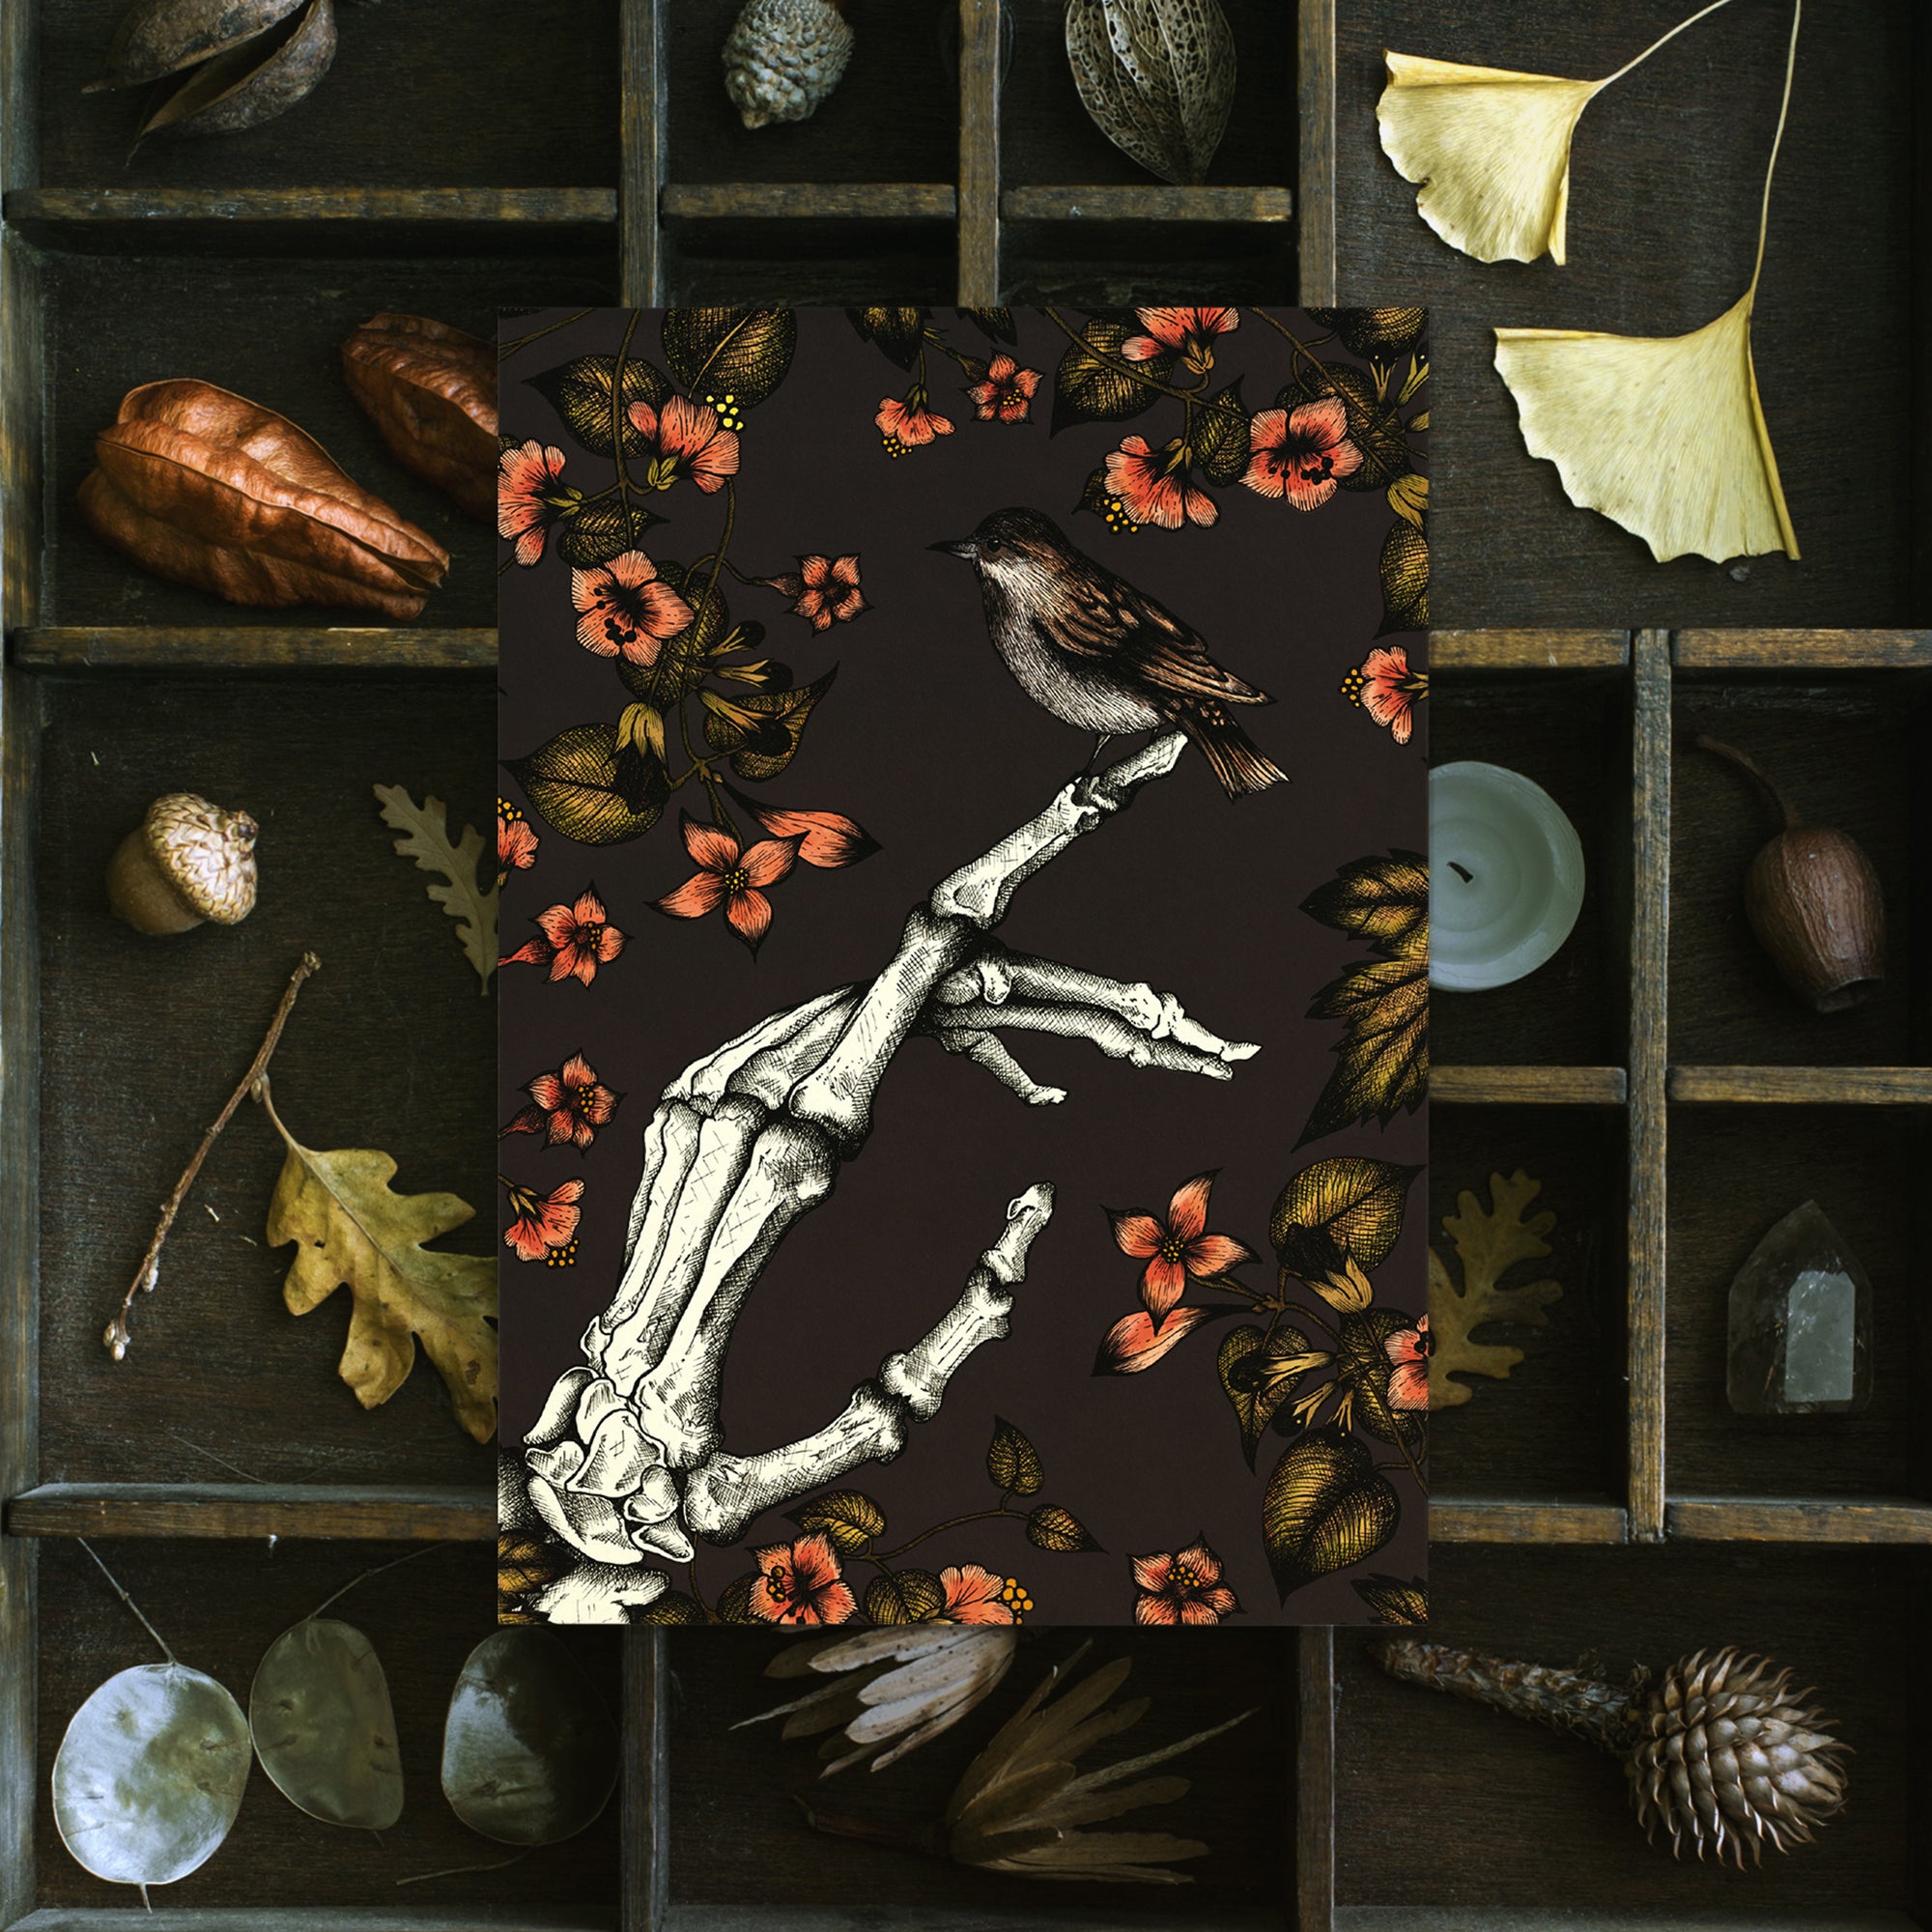 Skeleton and Sparrow - Postcard Mini Print